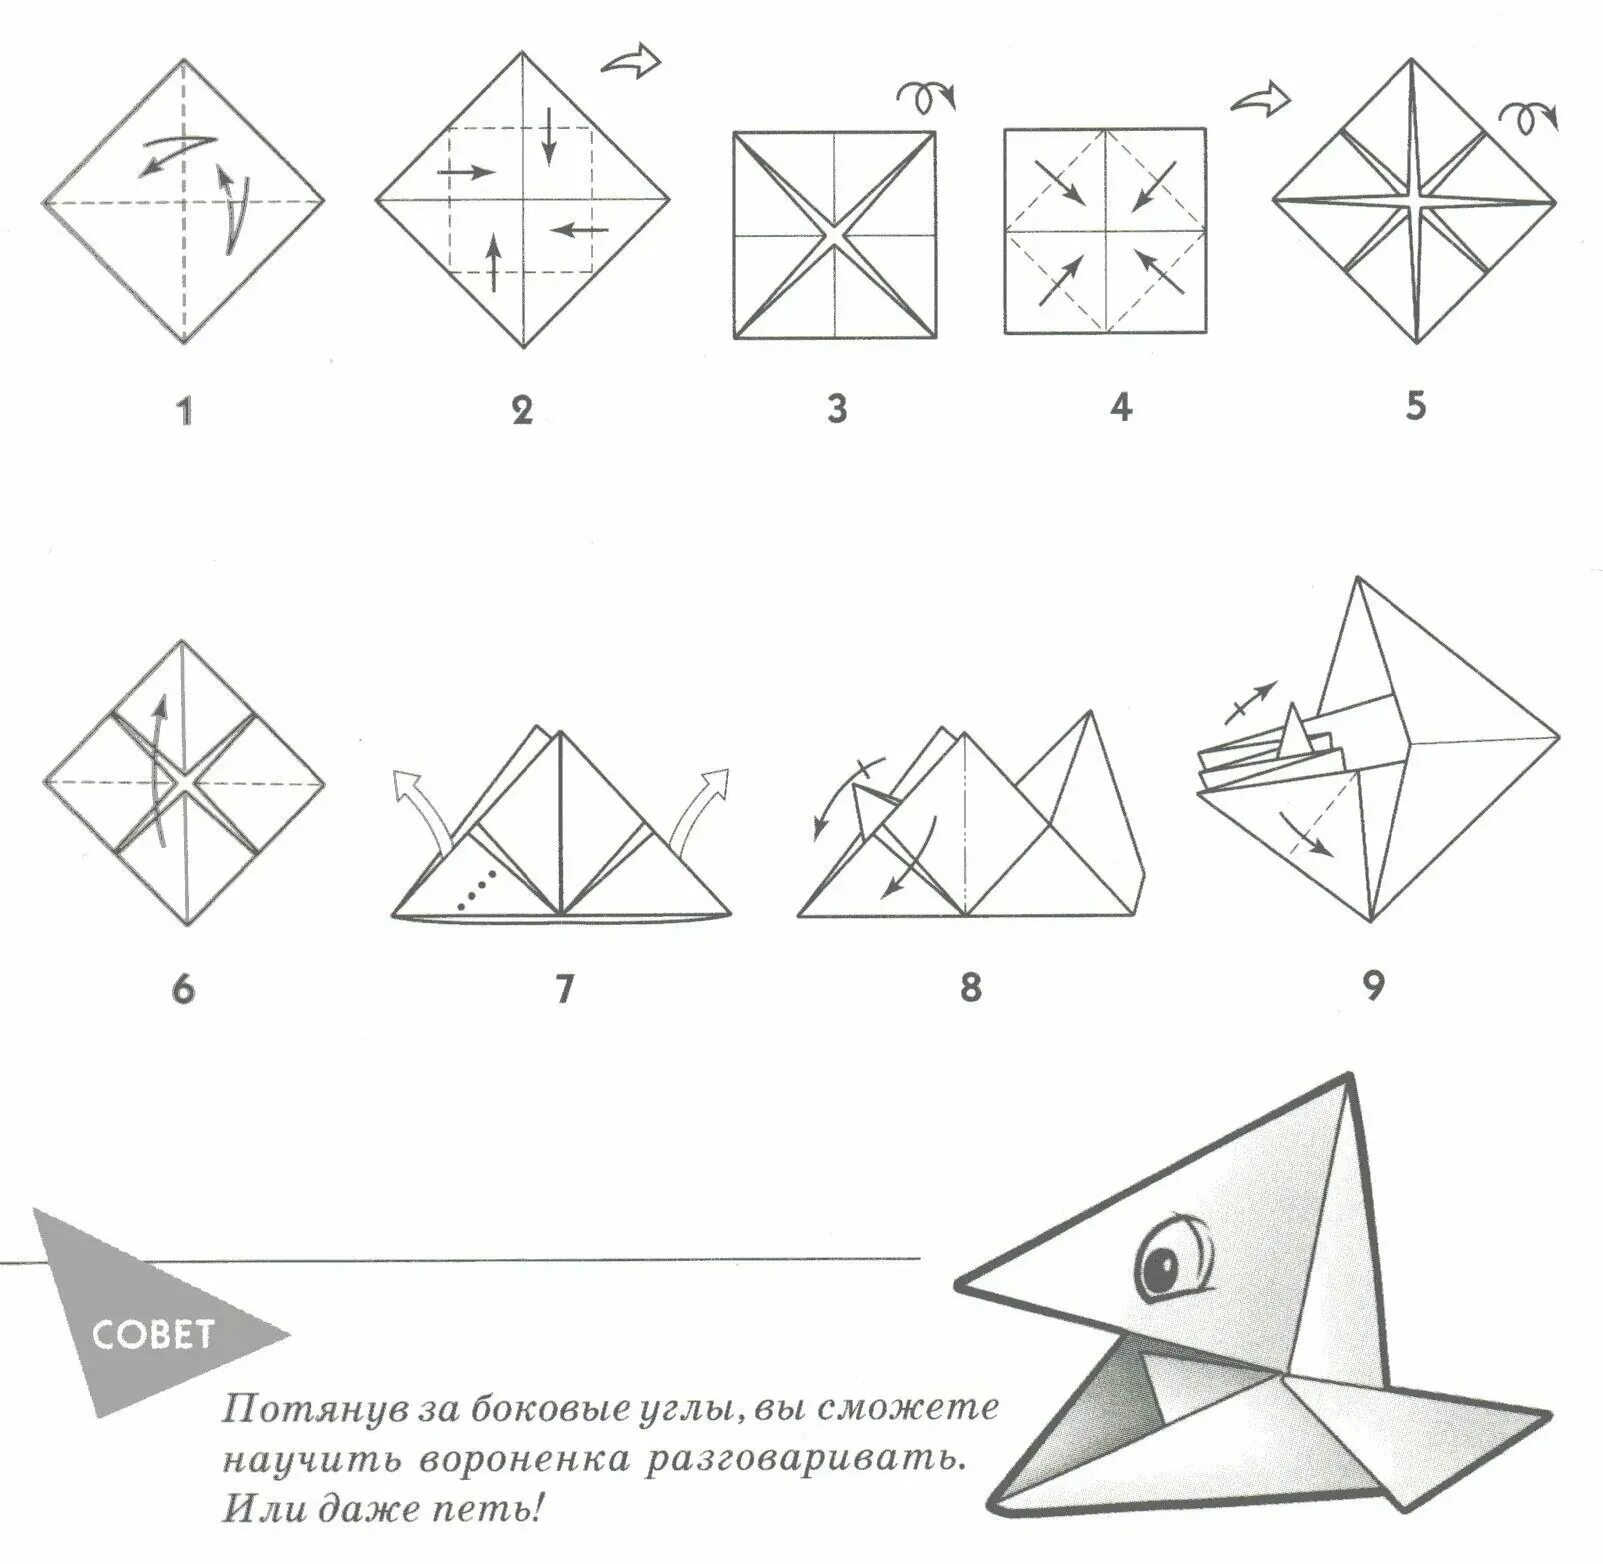 Простой способ оригами. Поделка оригами из бумаги для начинающих пошагово. Оригами из бумаги для начинающих схемы пошагово. Поделки из бумаги схема складывания. Поделки оригами из бумаги своими руками для начинающих пошагово.